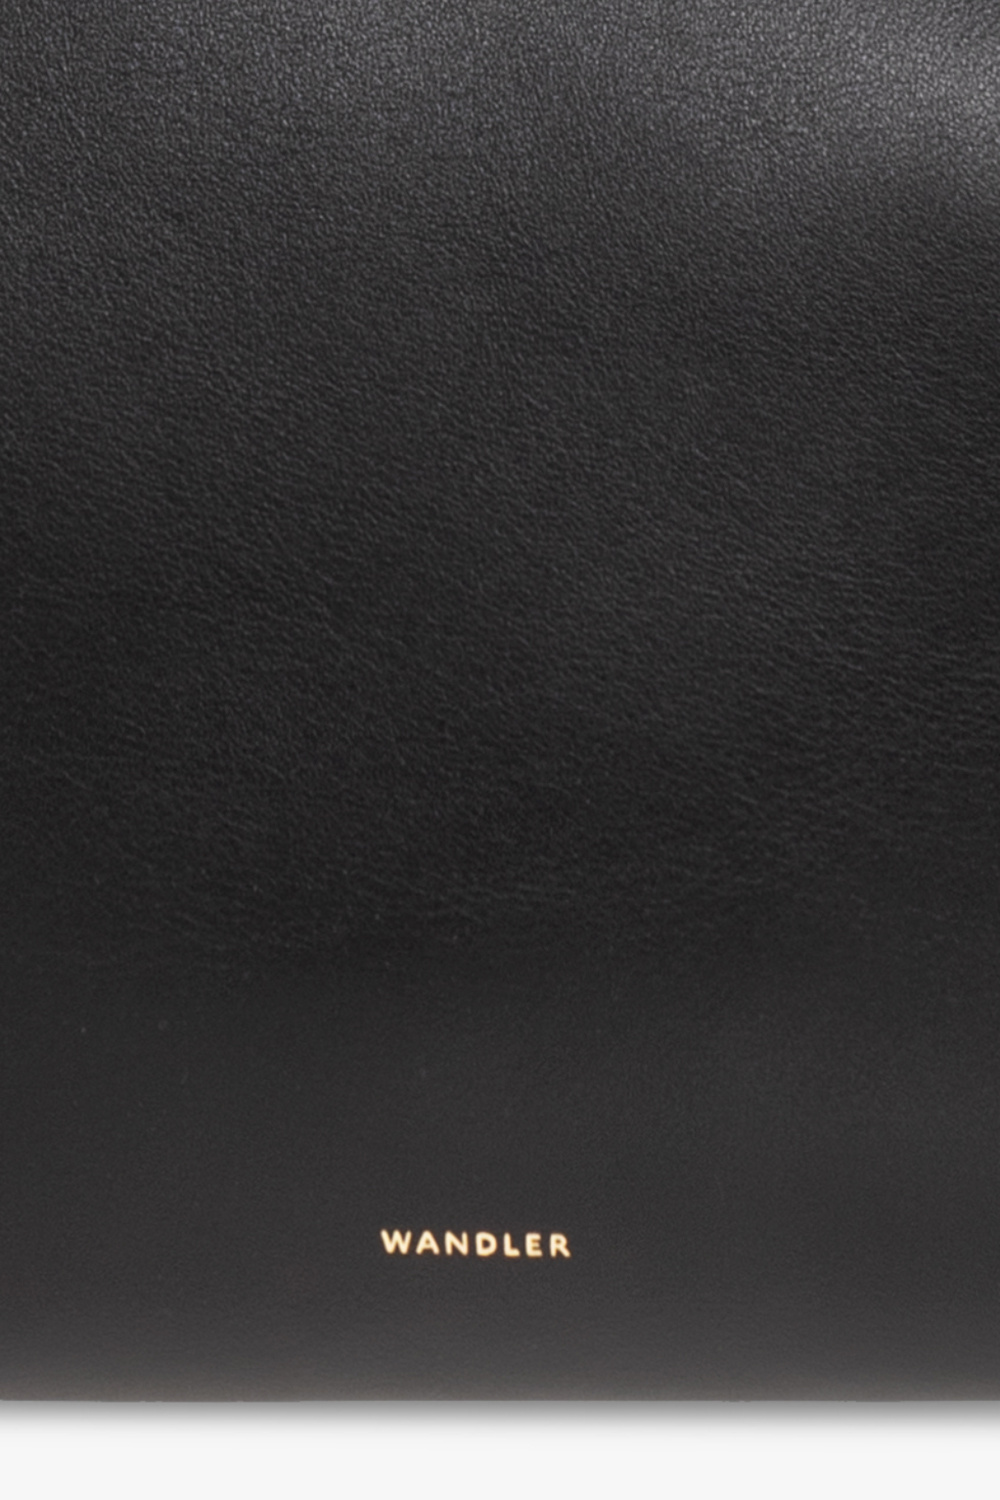 Wandler ‘Teresa’ shoulder bag